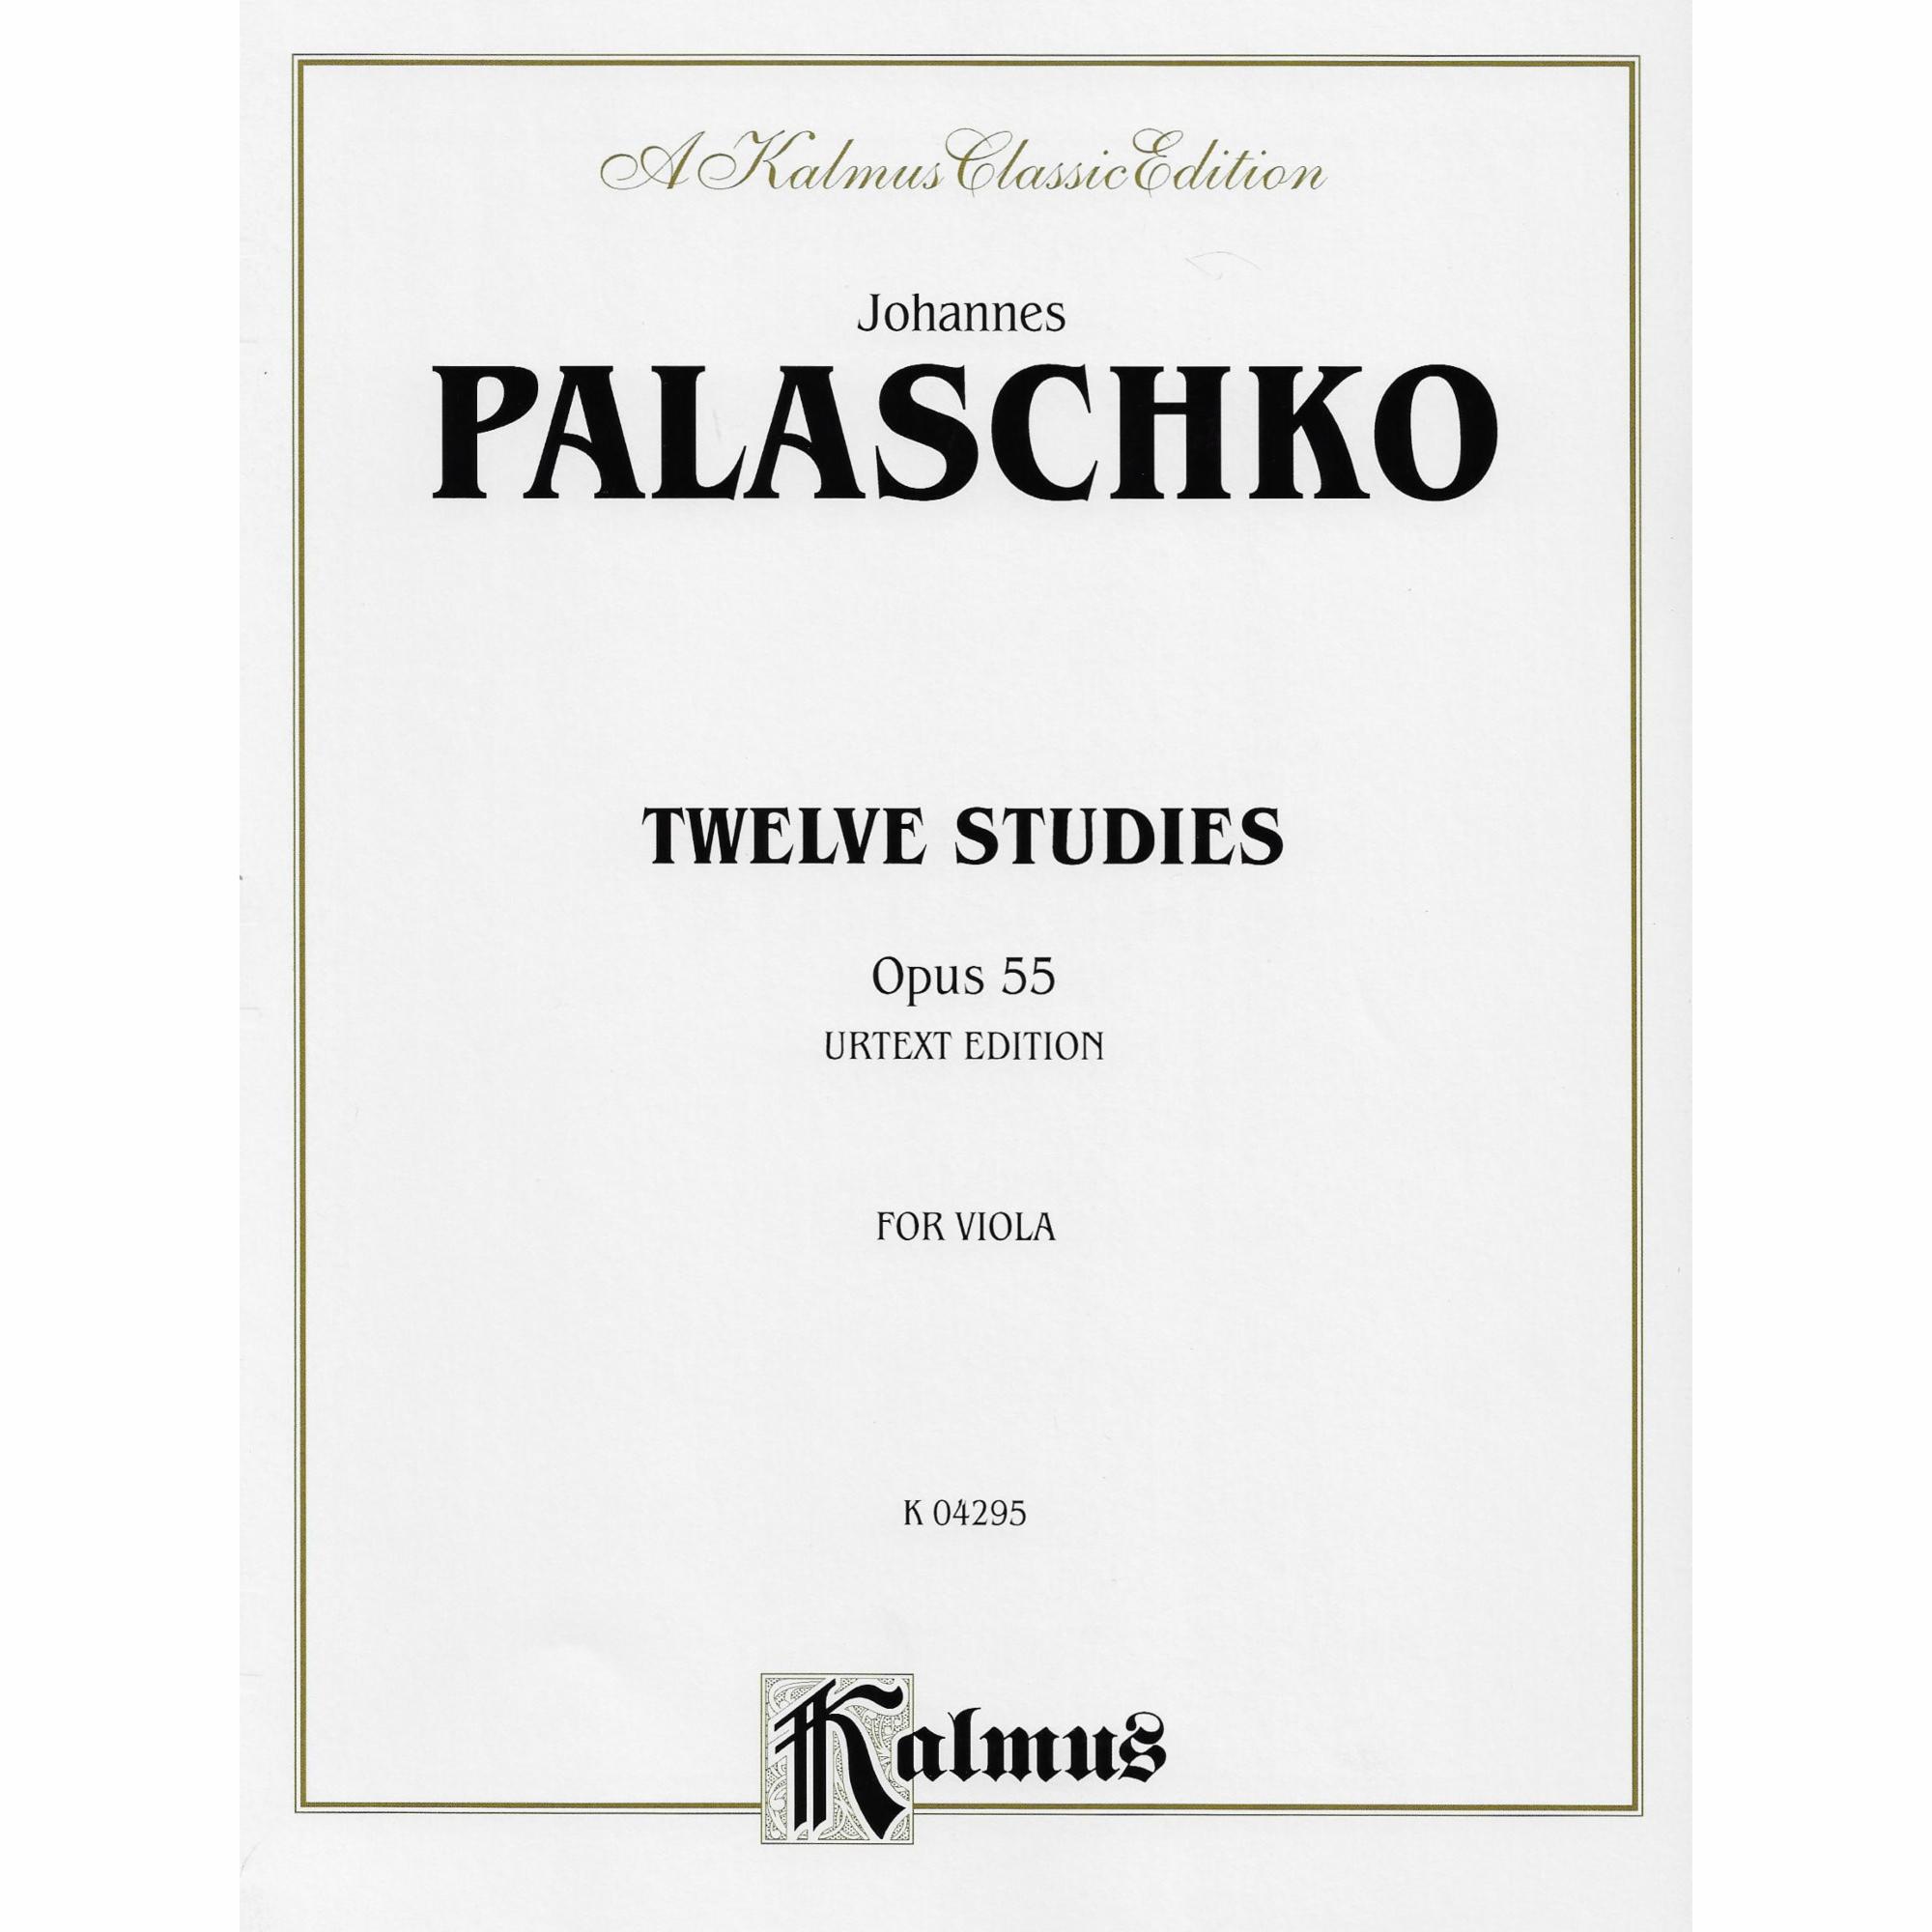 Palaschko -- Twelve Studies, Op. 55 for Viola